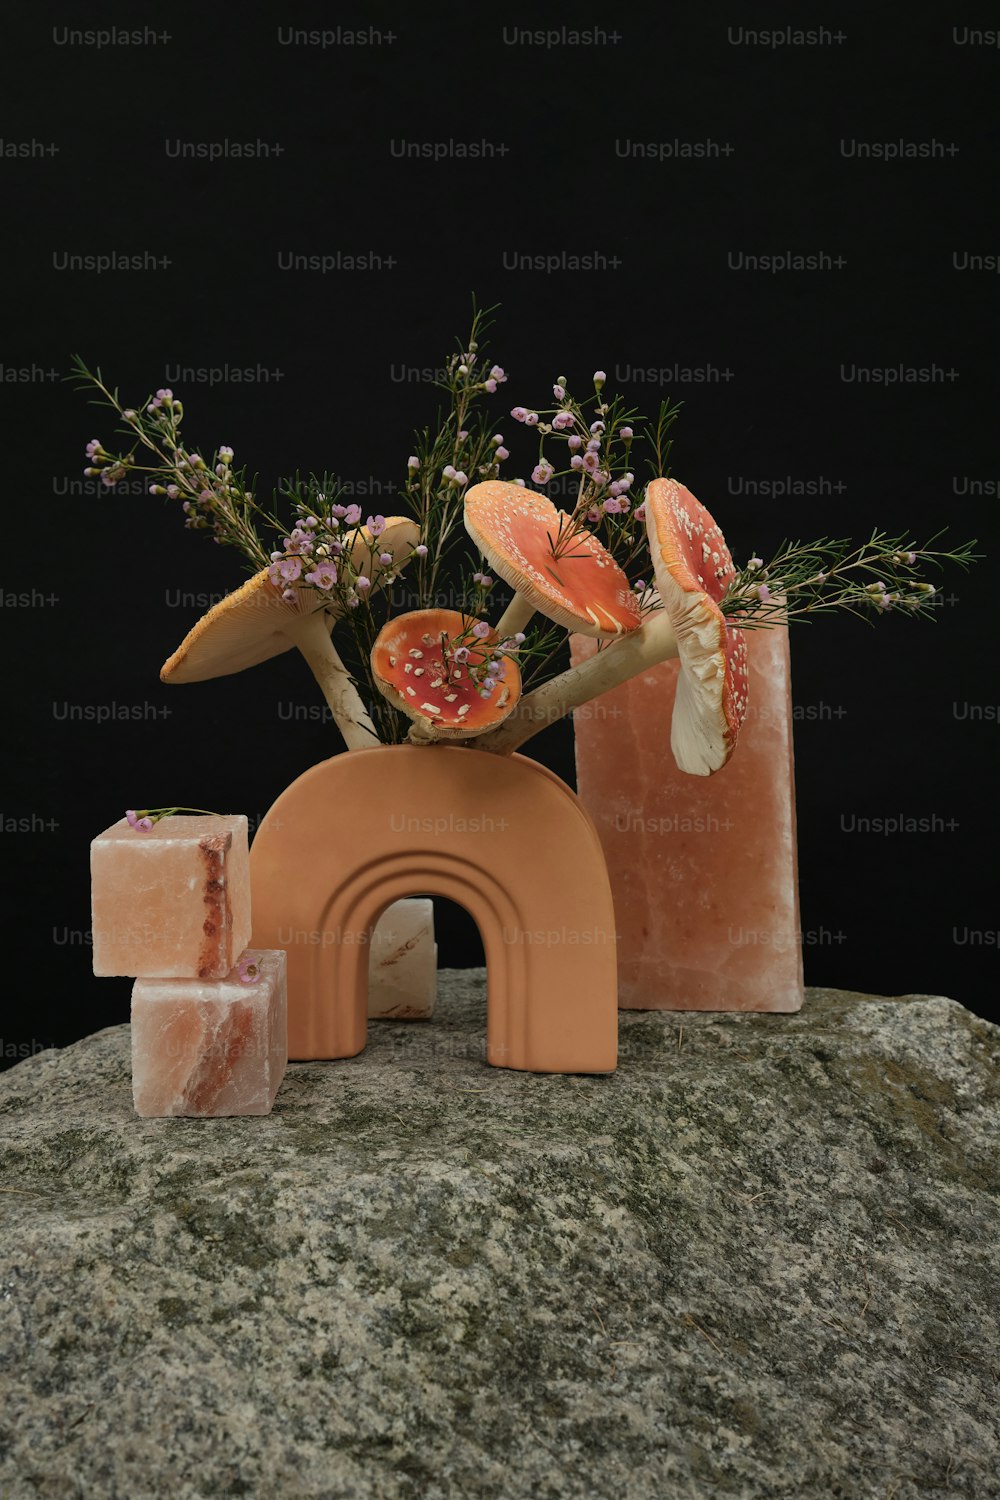 eine Vase mit Blumen und Früchten auf einem Felsen